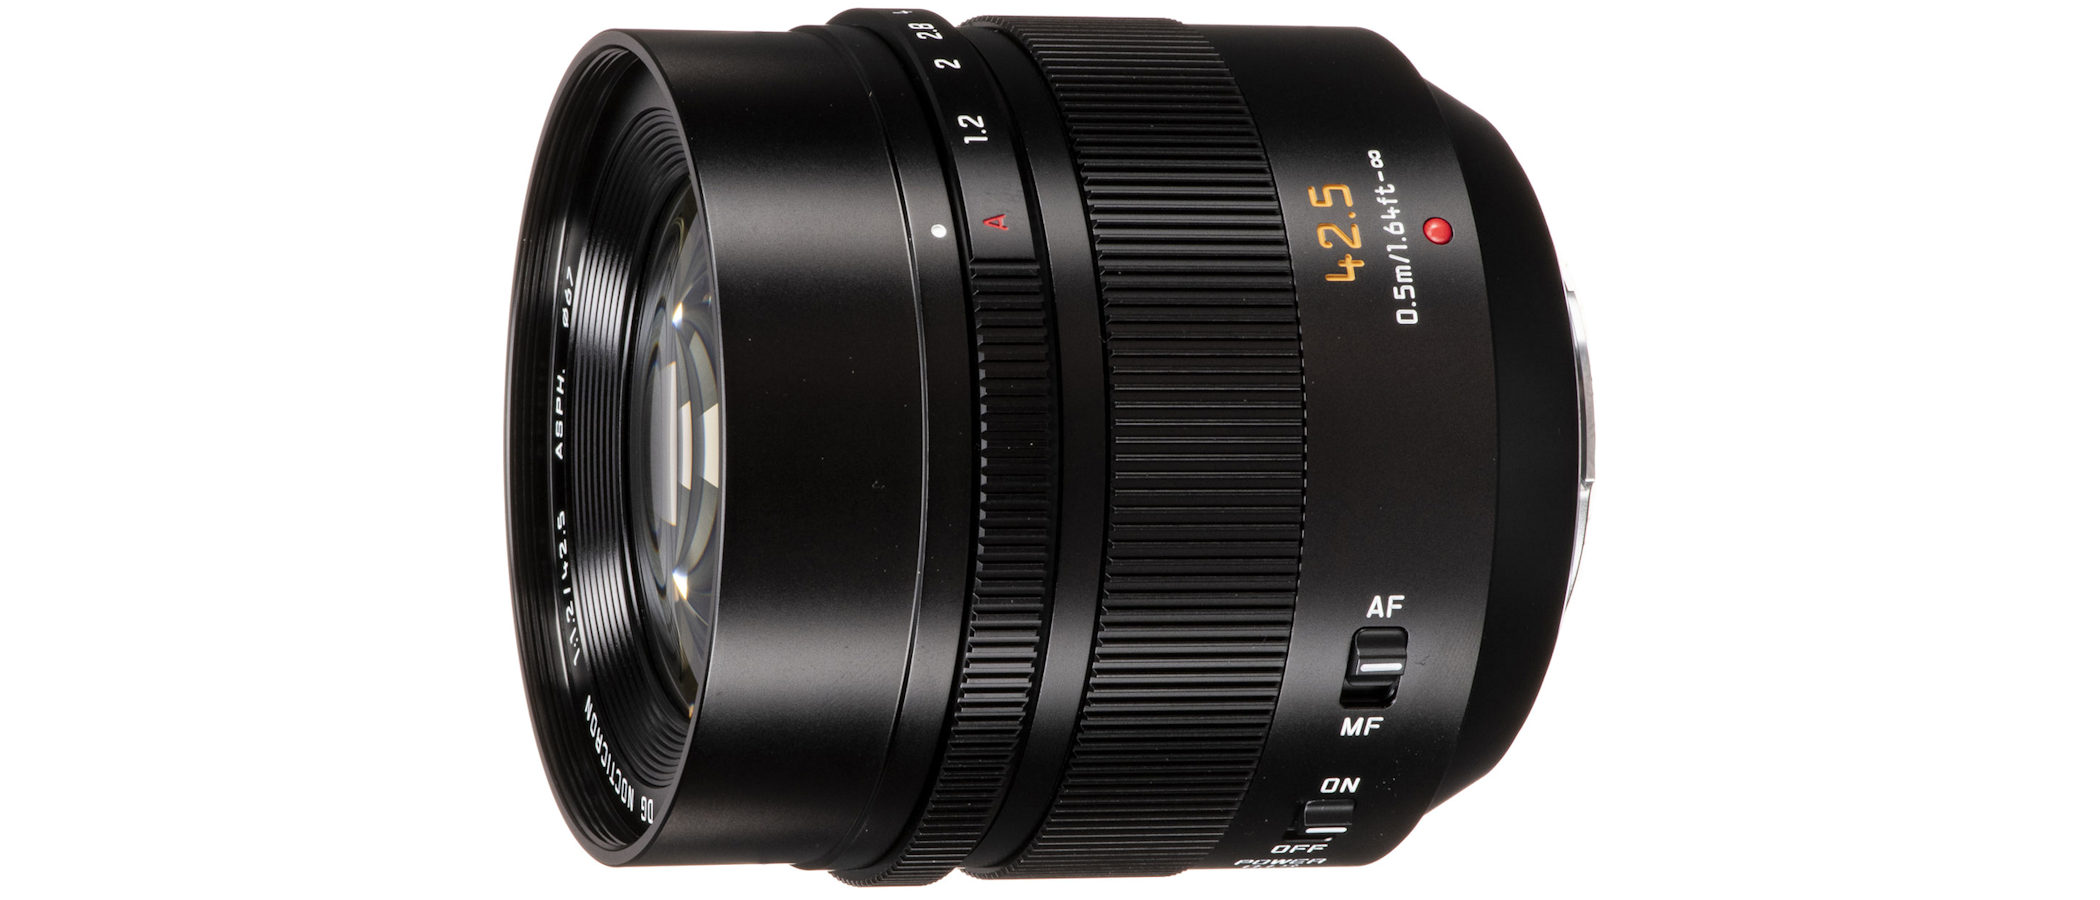 Panasonic Leica DG Nocticron 42.5mm f/1.2 ASPH Power OIS review 